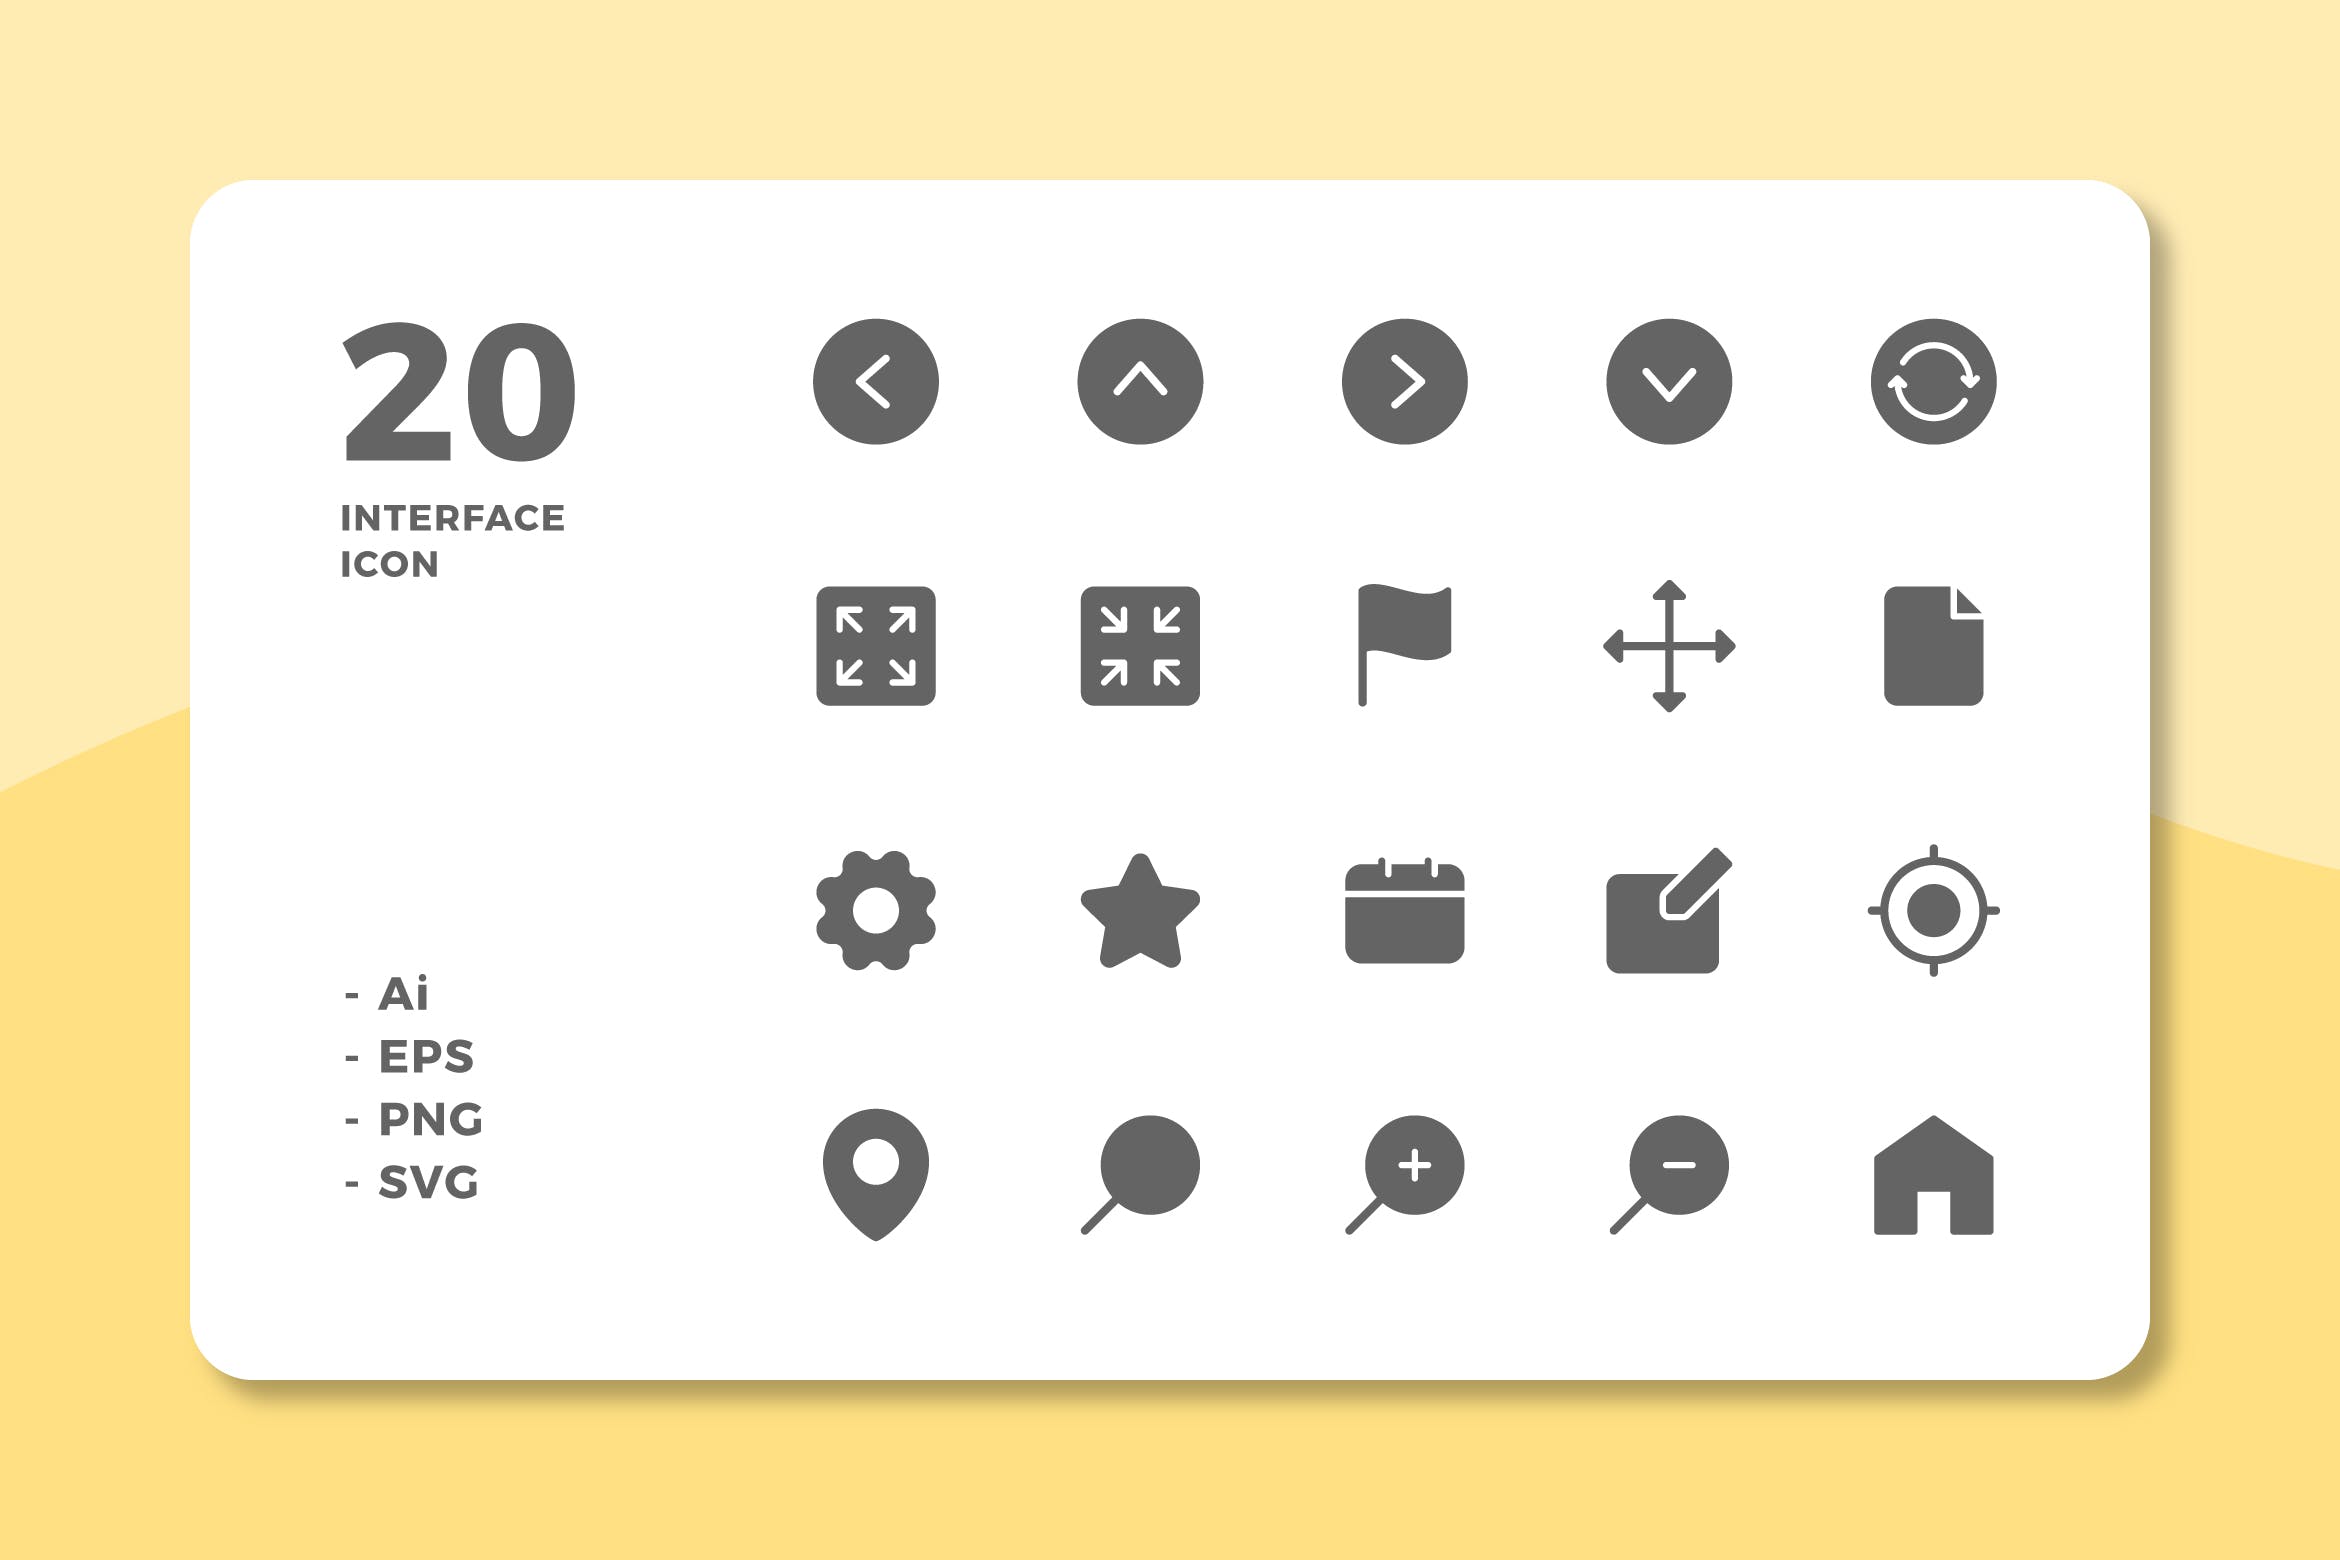 20枚UI界面设计APP操作选项16图库精选图标v1 20 Interface Icons Vol.1 (Solid)插图